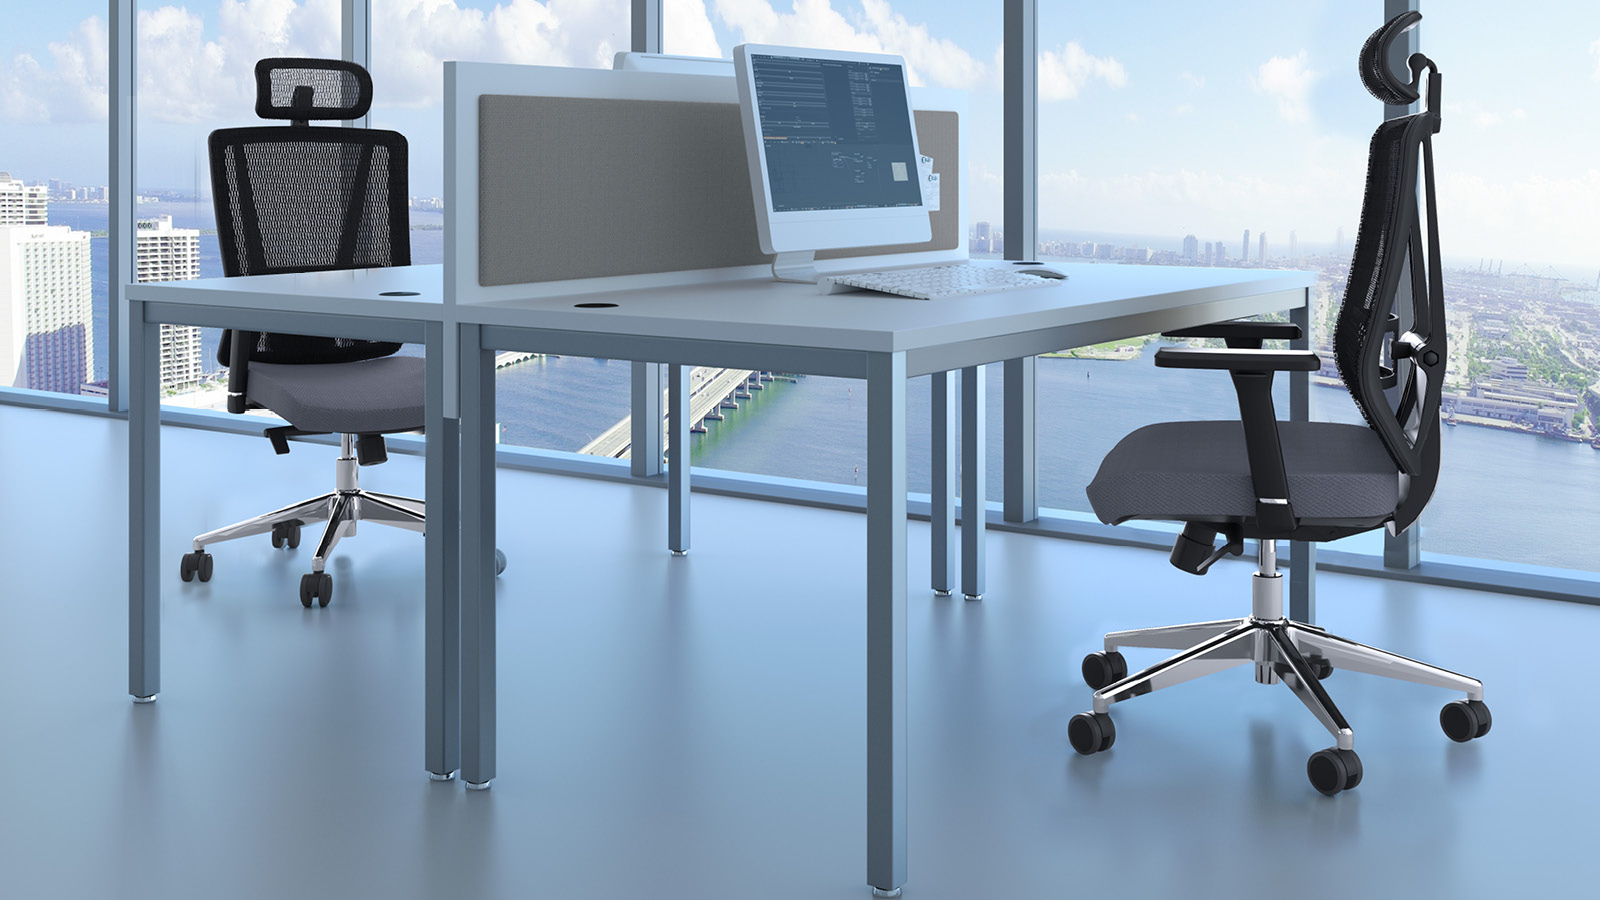 Małe biuro wyposażone w biurka do pracy zespołowej, rozdzielone panelem, uzupełnione w krzesła z oparciem siatkowym.